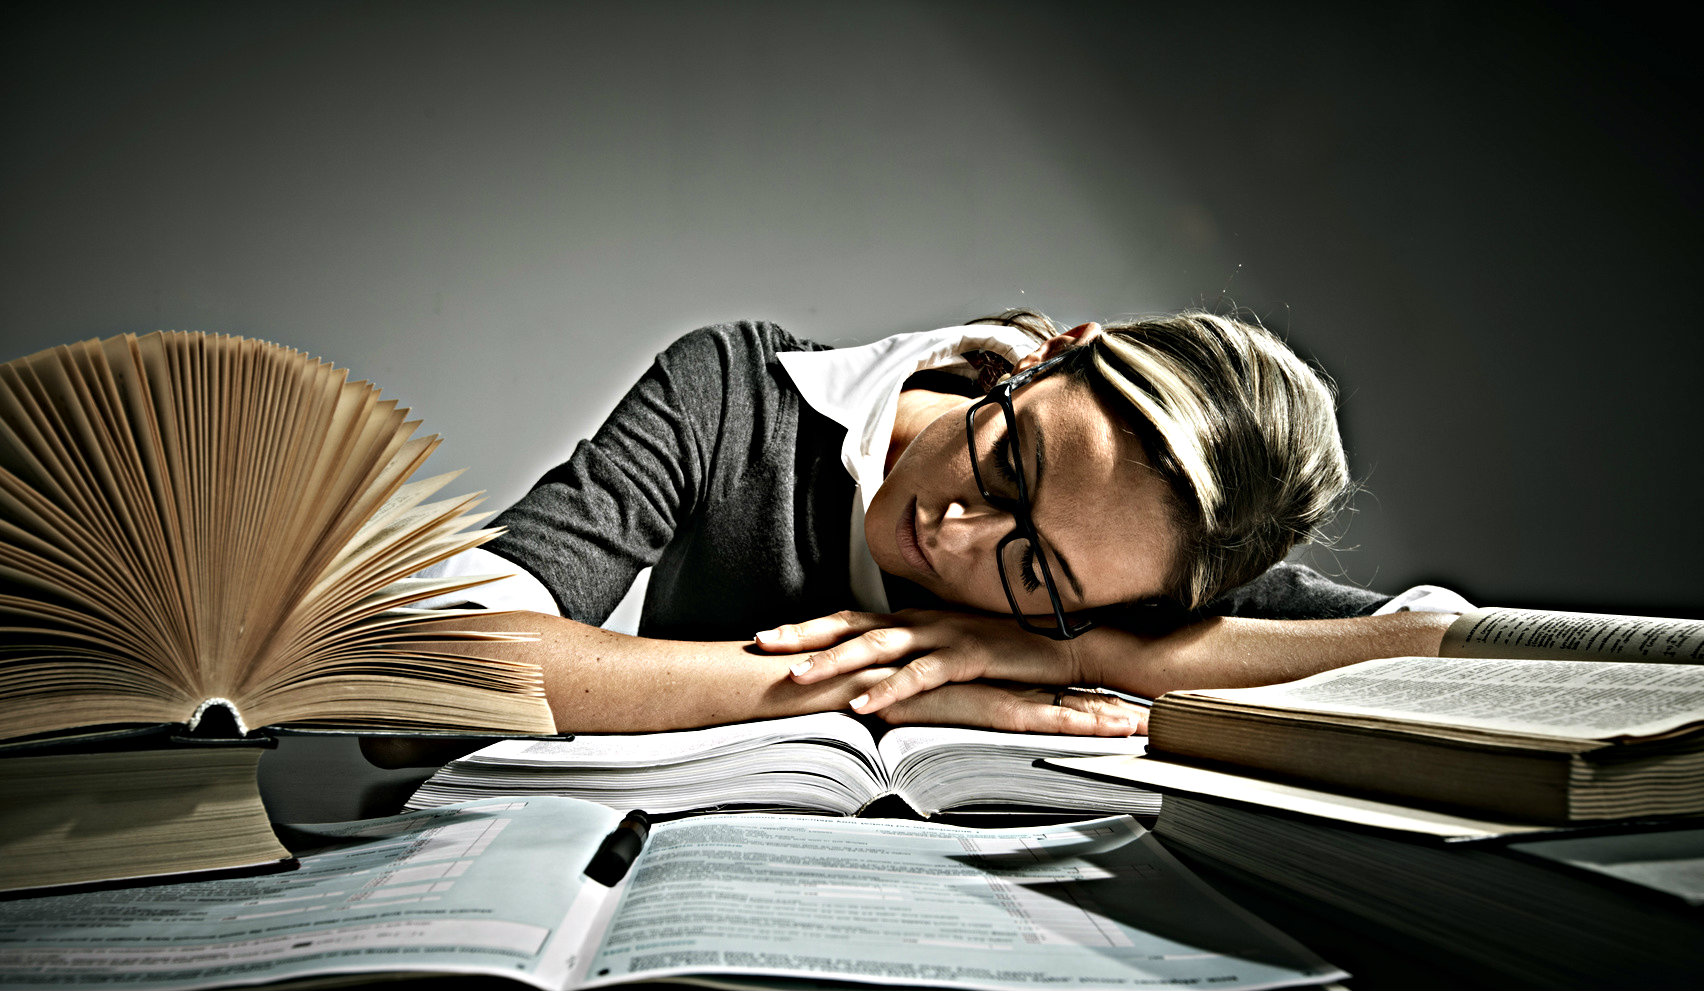 Картинки день размышлений. Человек над книгой. Спящий человек с книгой. Уставший учитель. Человек склонился над книгой.